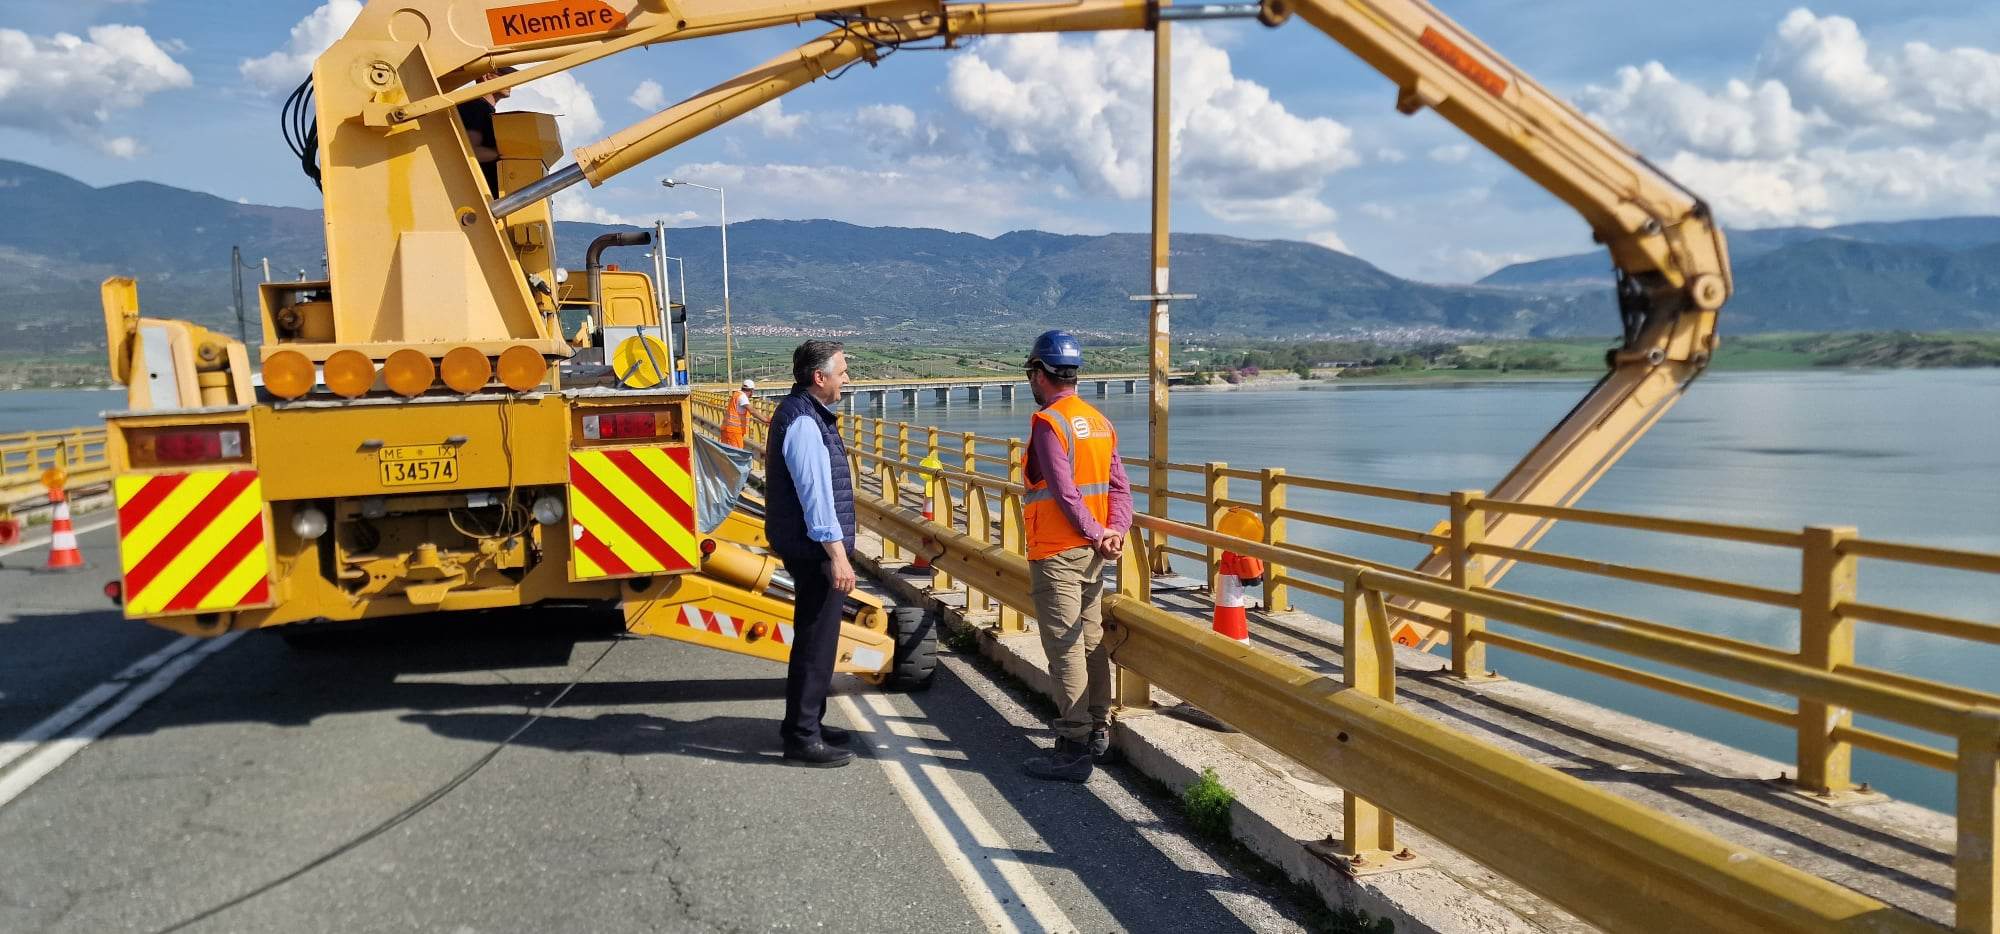 Ολοκληρώθηκε χωρίς προβλήματα η δεύτερη φάση εργασιών στην Υψηλή Γέφυρα Σερβίων -1-